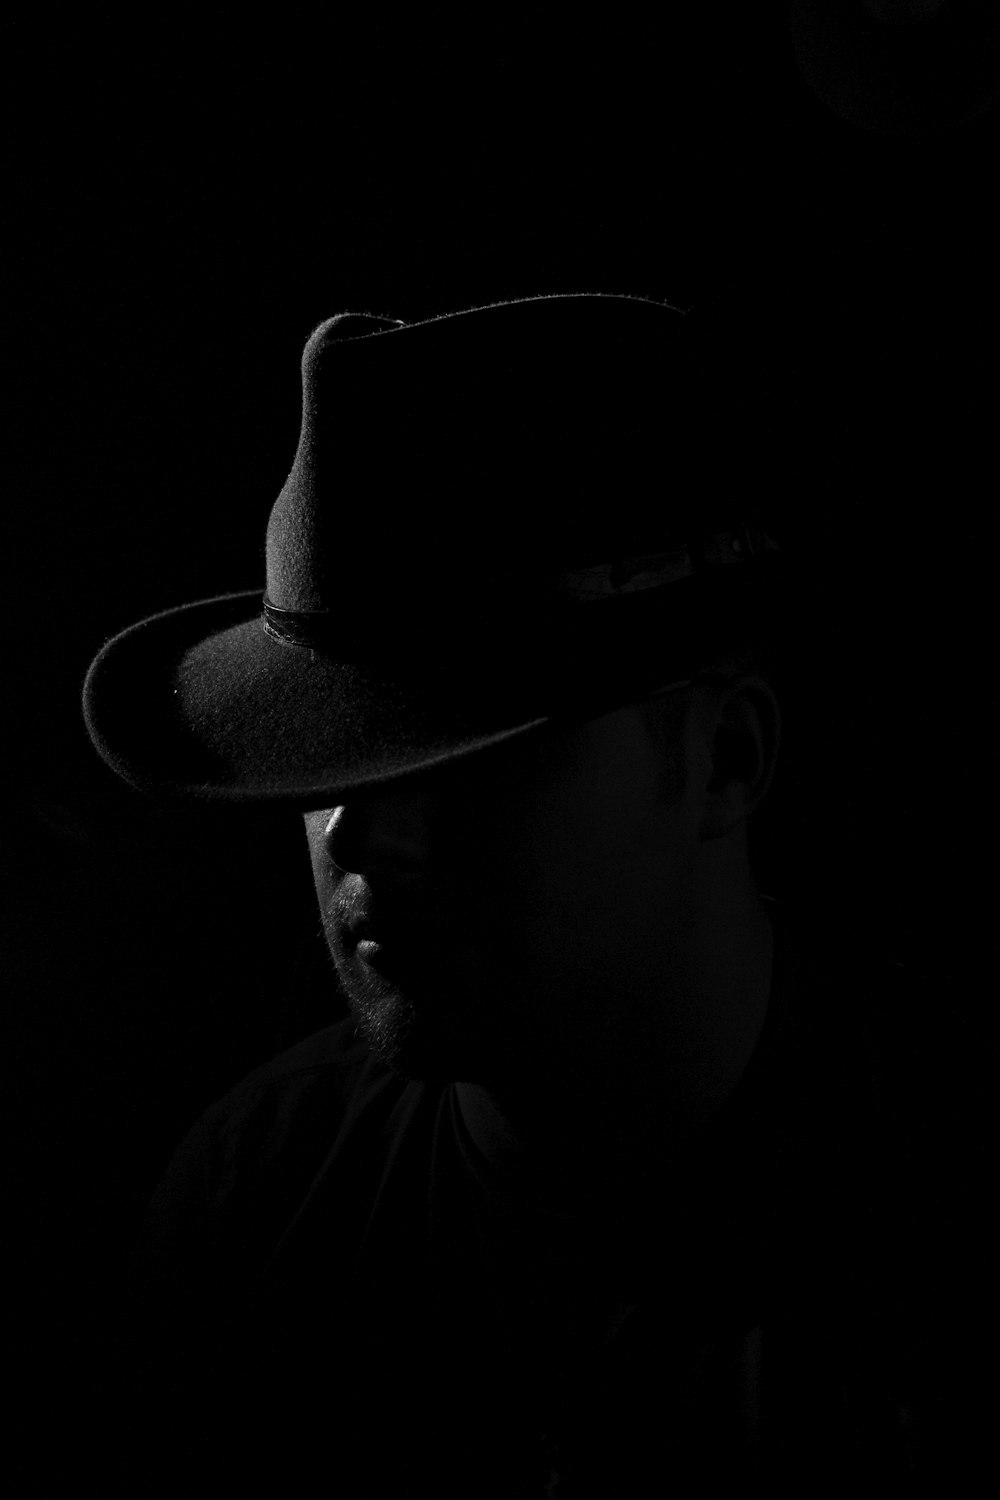 man wearing black hat